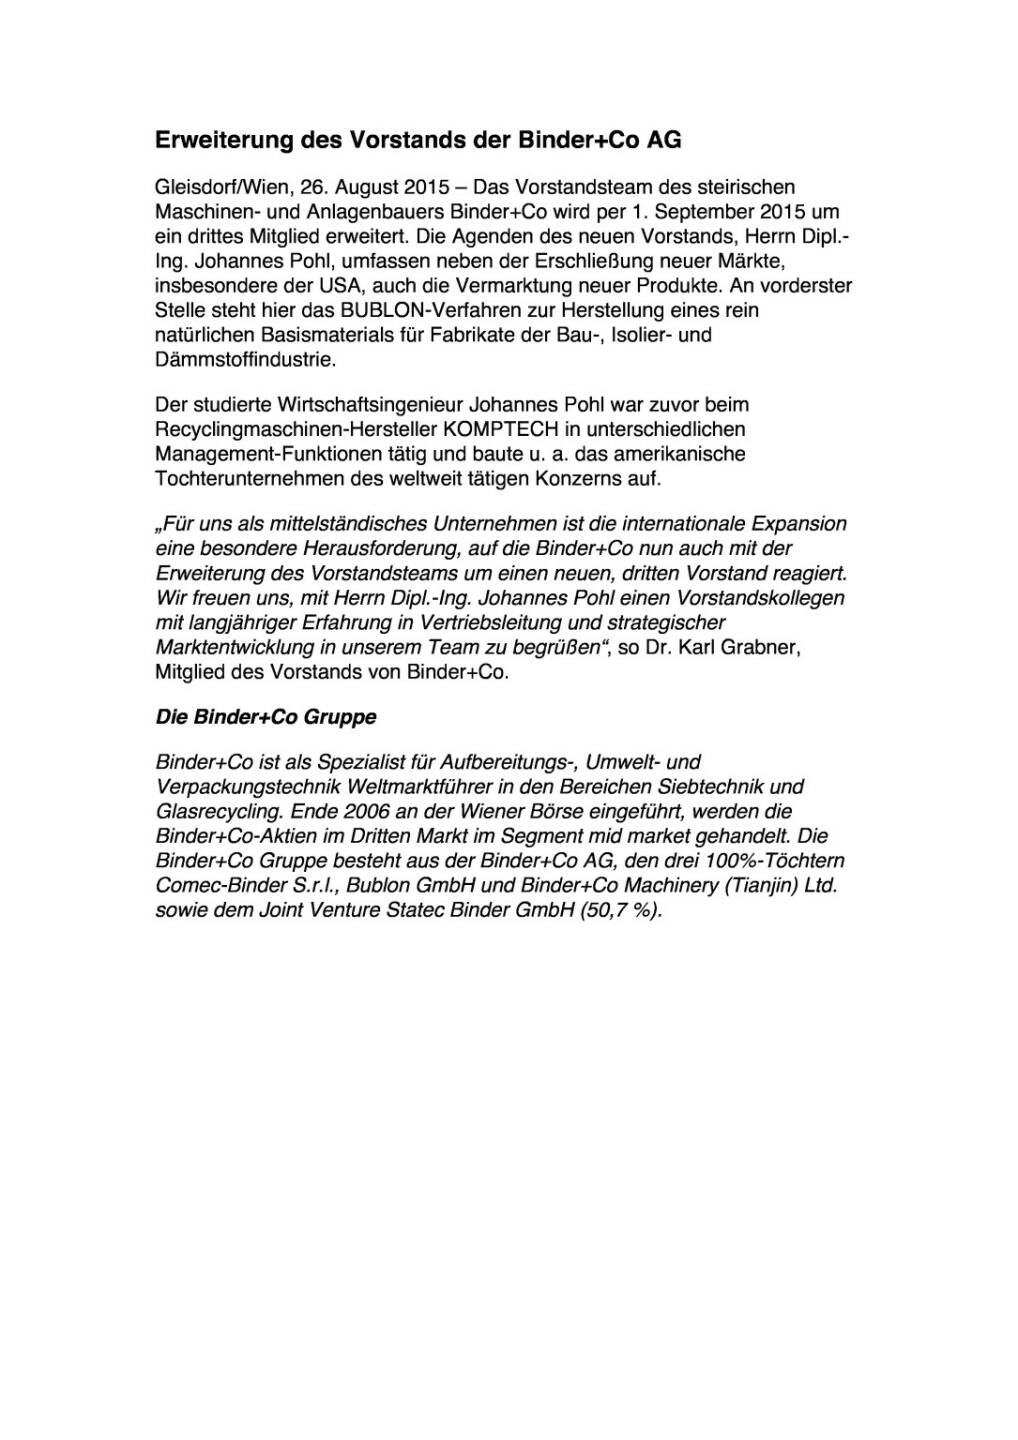 Erweiterung des Vorstands der Binder+Co AG, Seite 1/1, komplettes Dokument unter http://boerse-social.com/static/uploads/file_313_erweiterung_des_vorstands_der_binderco_ag.pdf